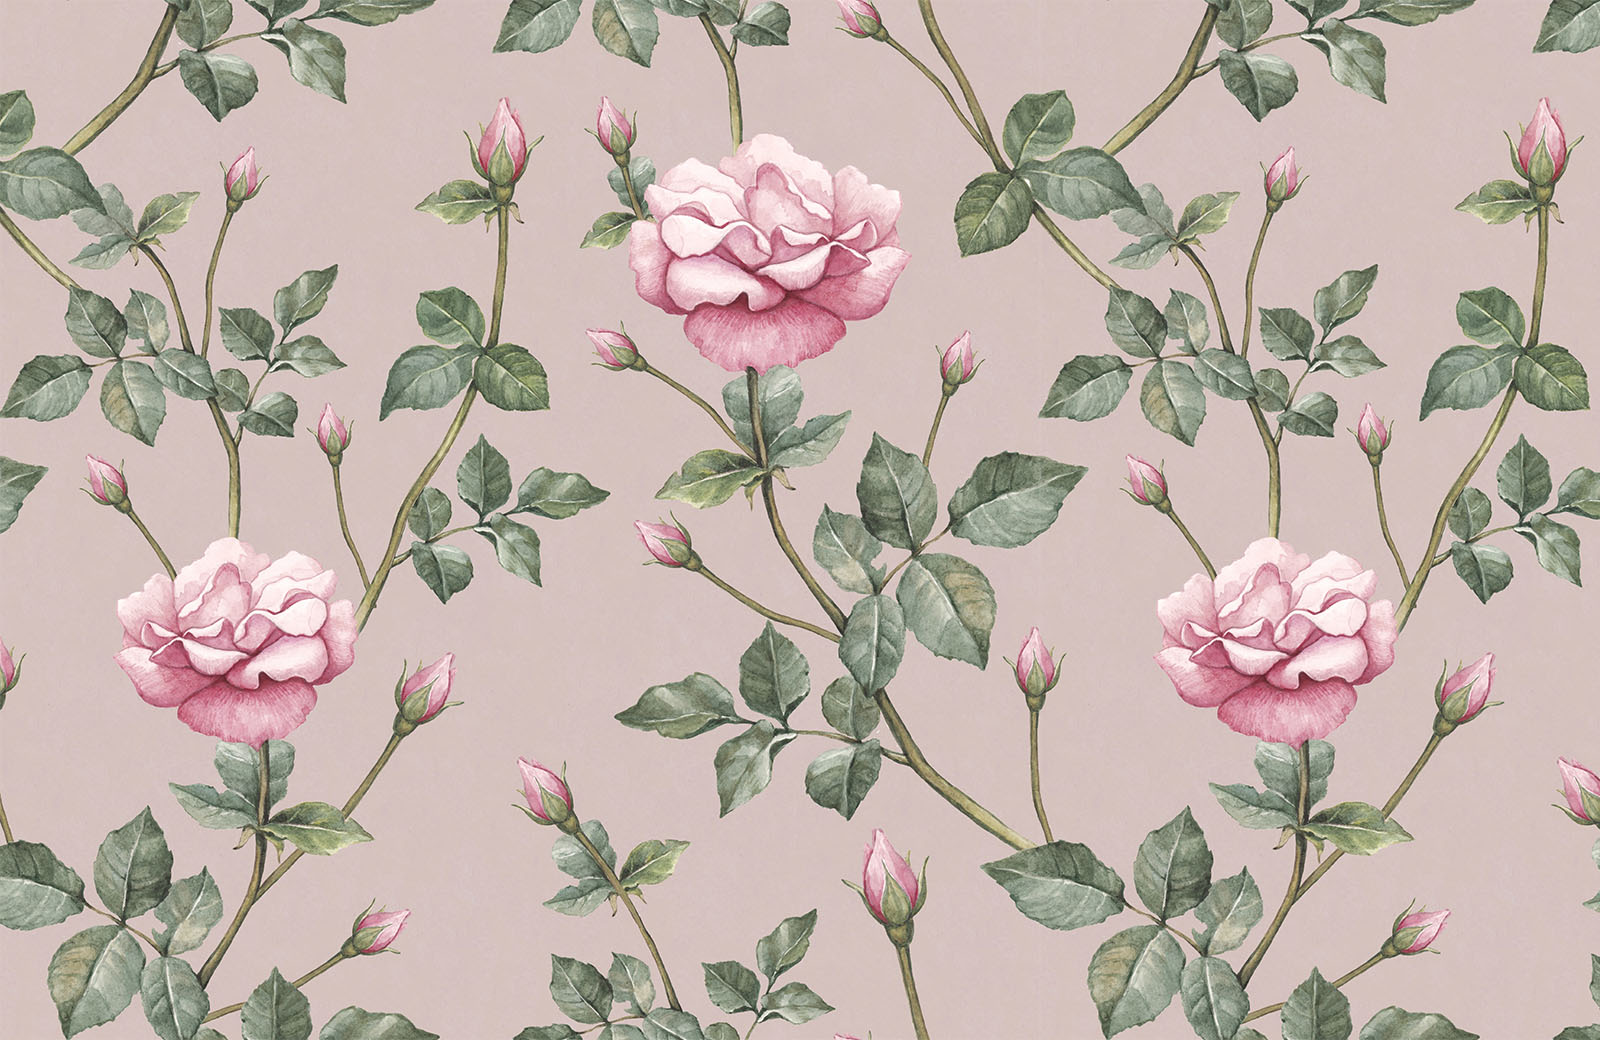 pink-rose-with-green-leaf-wallpaper-design